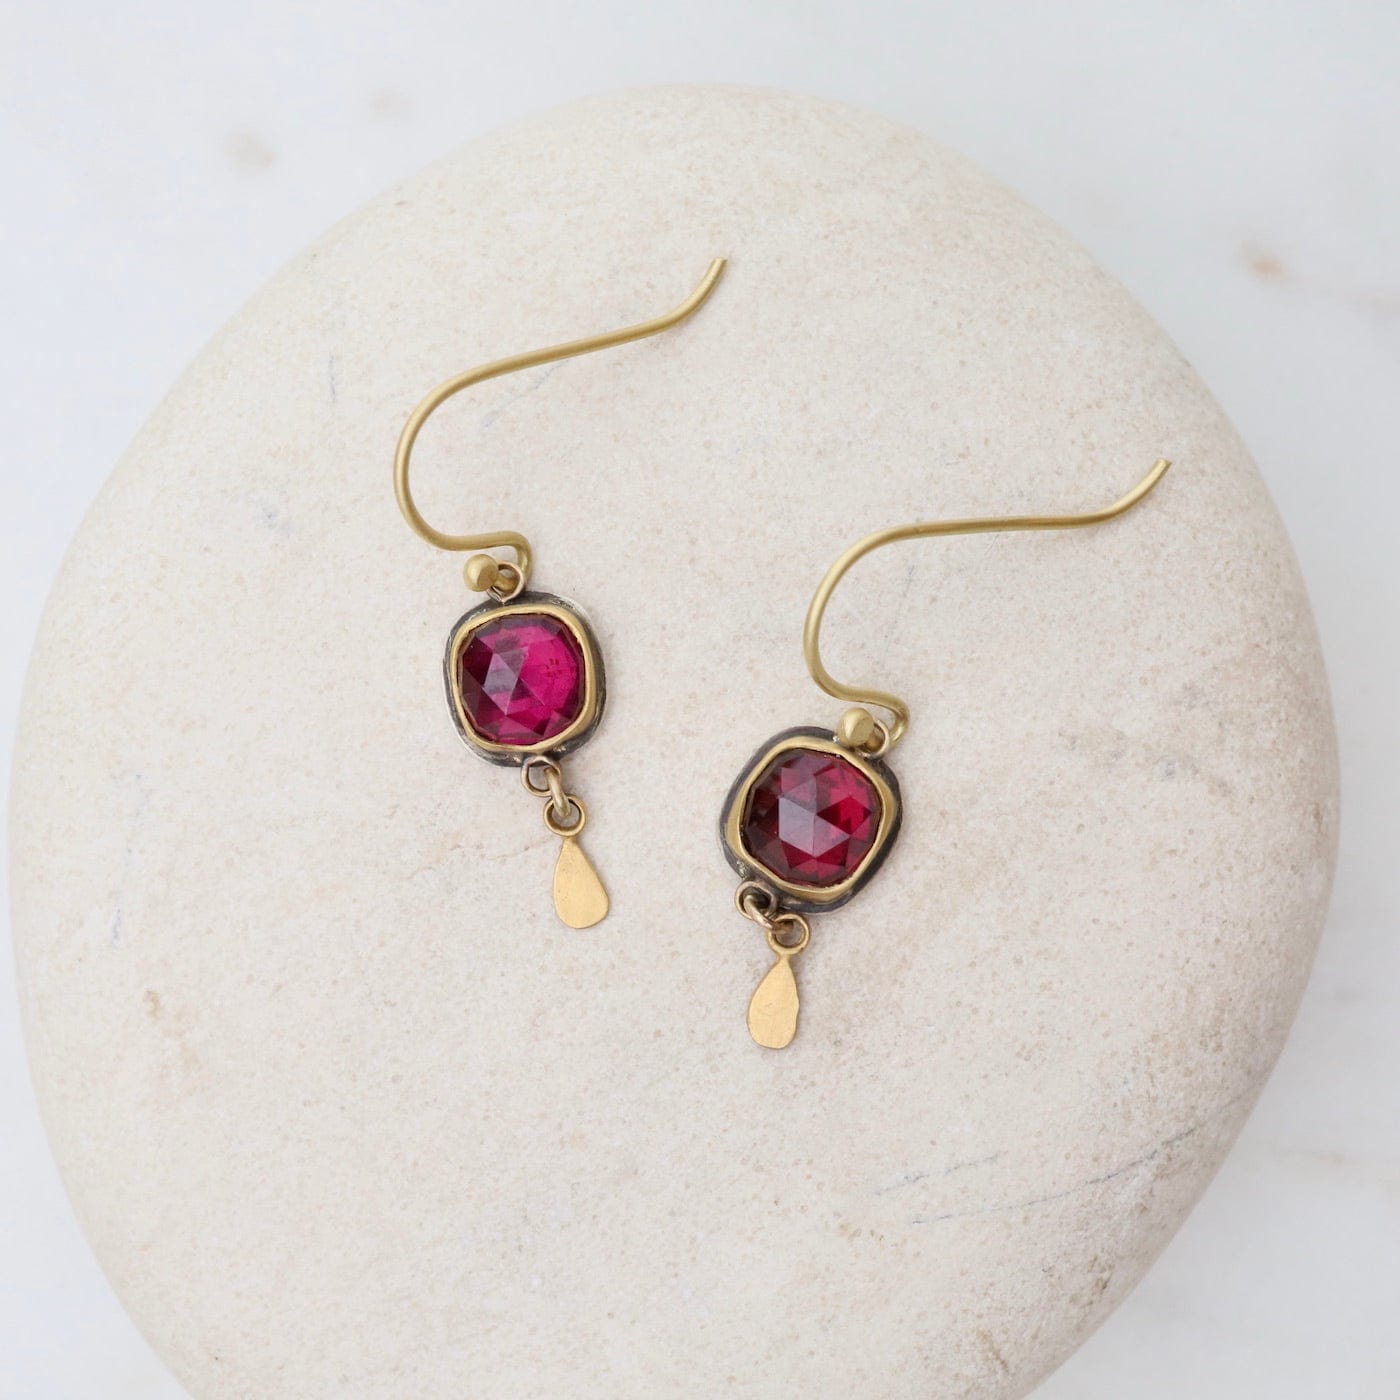 GOLD AND SILVER GARNET DROP EARRINGS. Jewellery & Gemstones - Earrings -  Auctionet